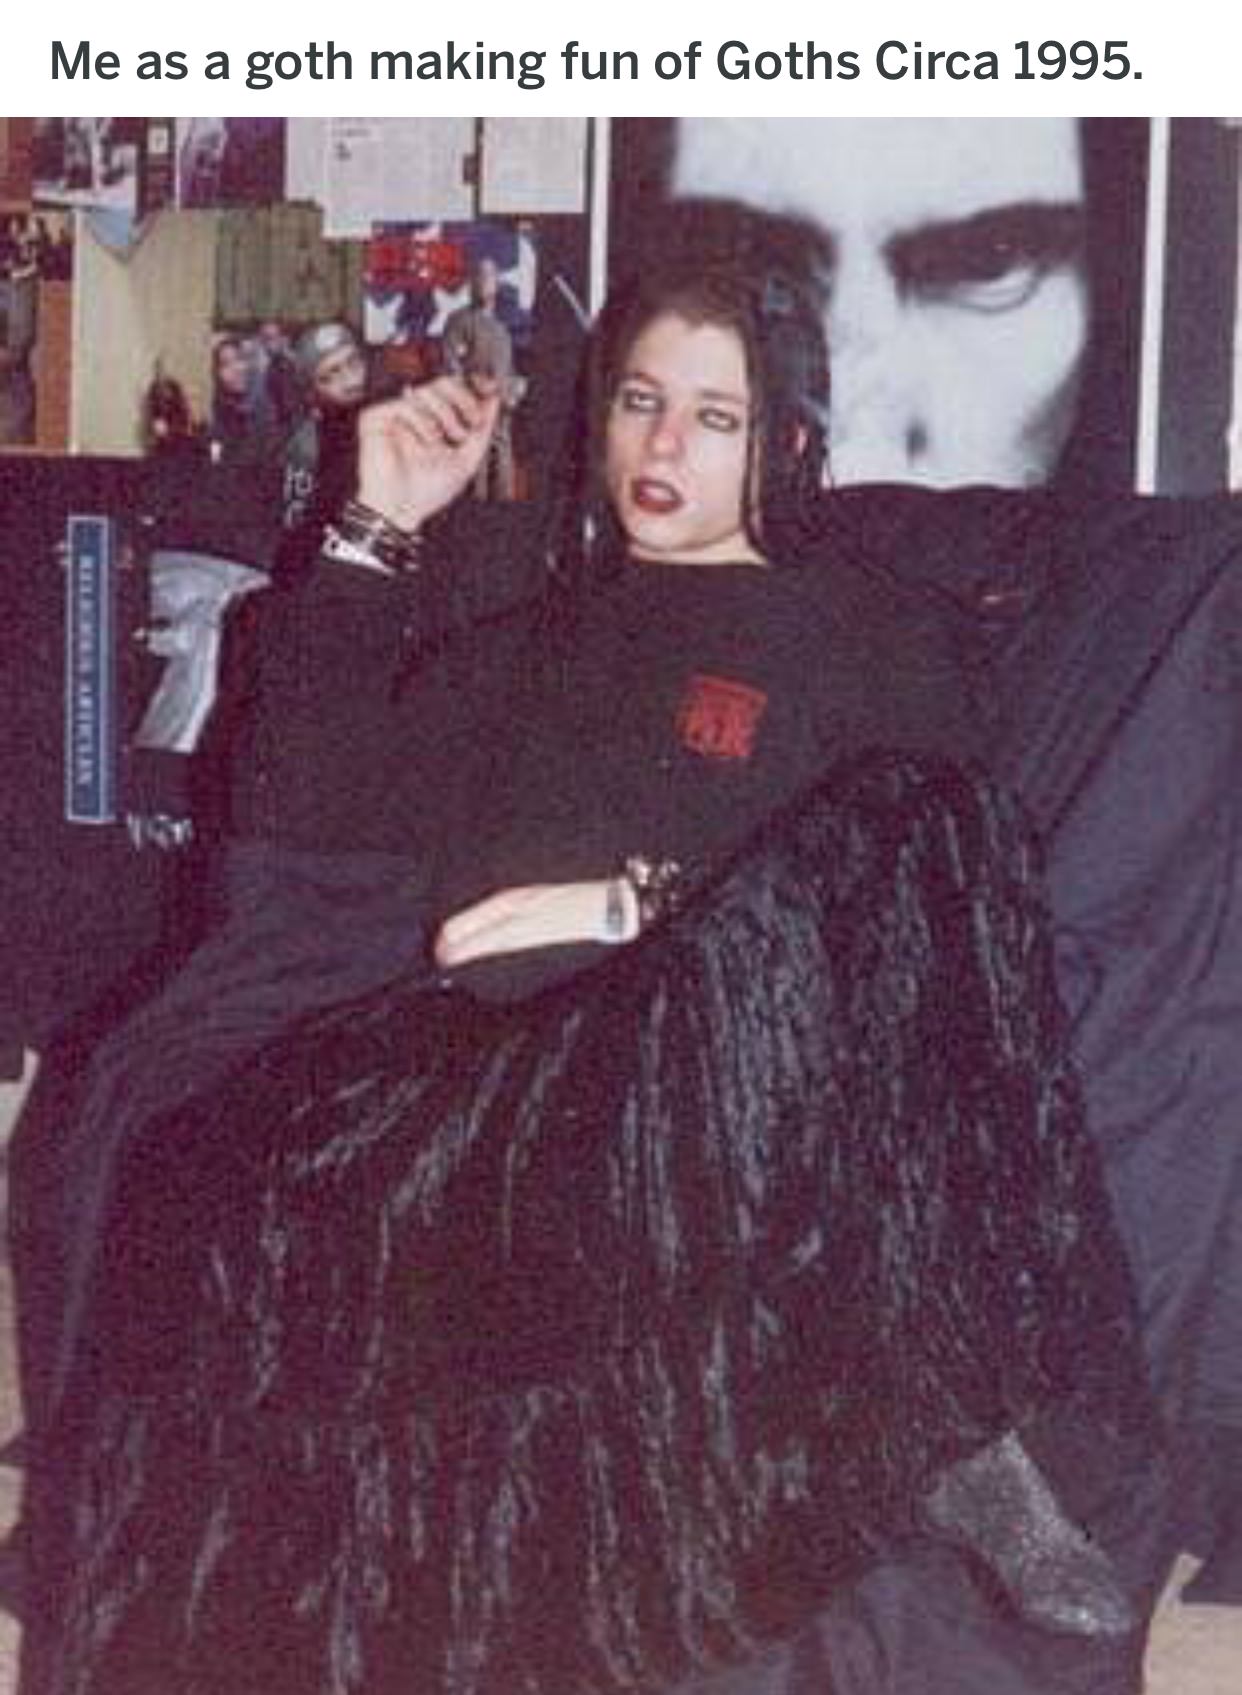 1995 goth - Me as a goth making fun of Goths Circa 1995.